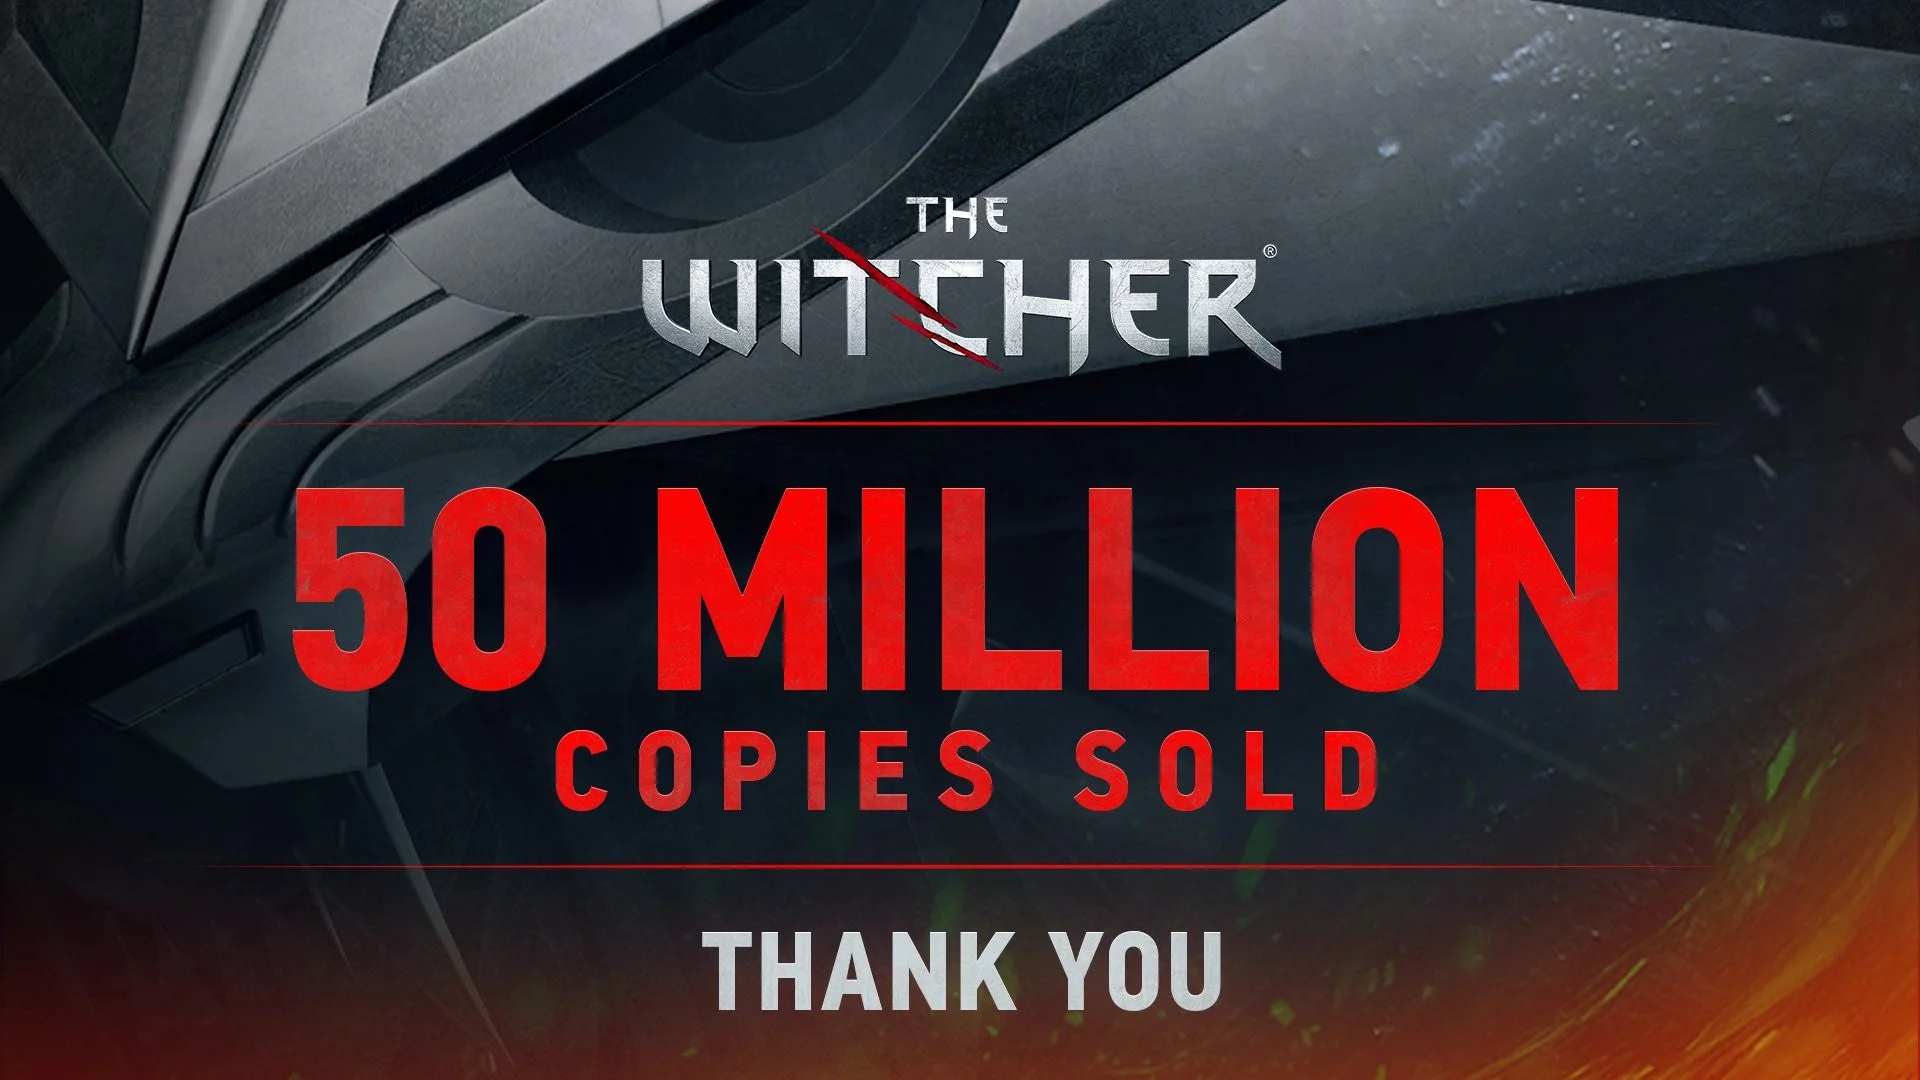 Продажи игр по «Ведьмаку» превысили 50 млн копий - фото 1